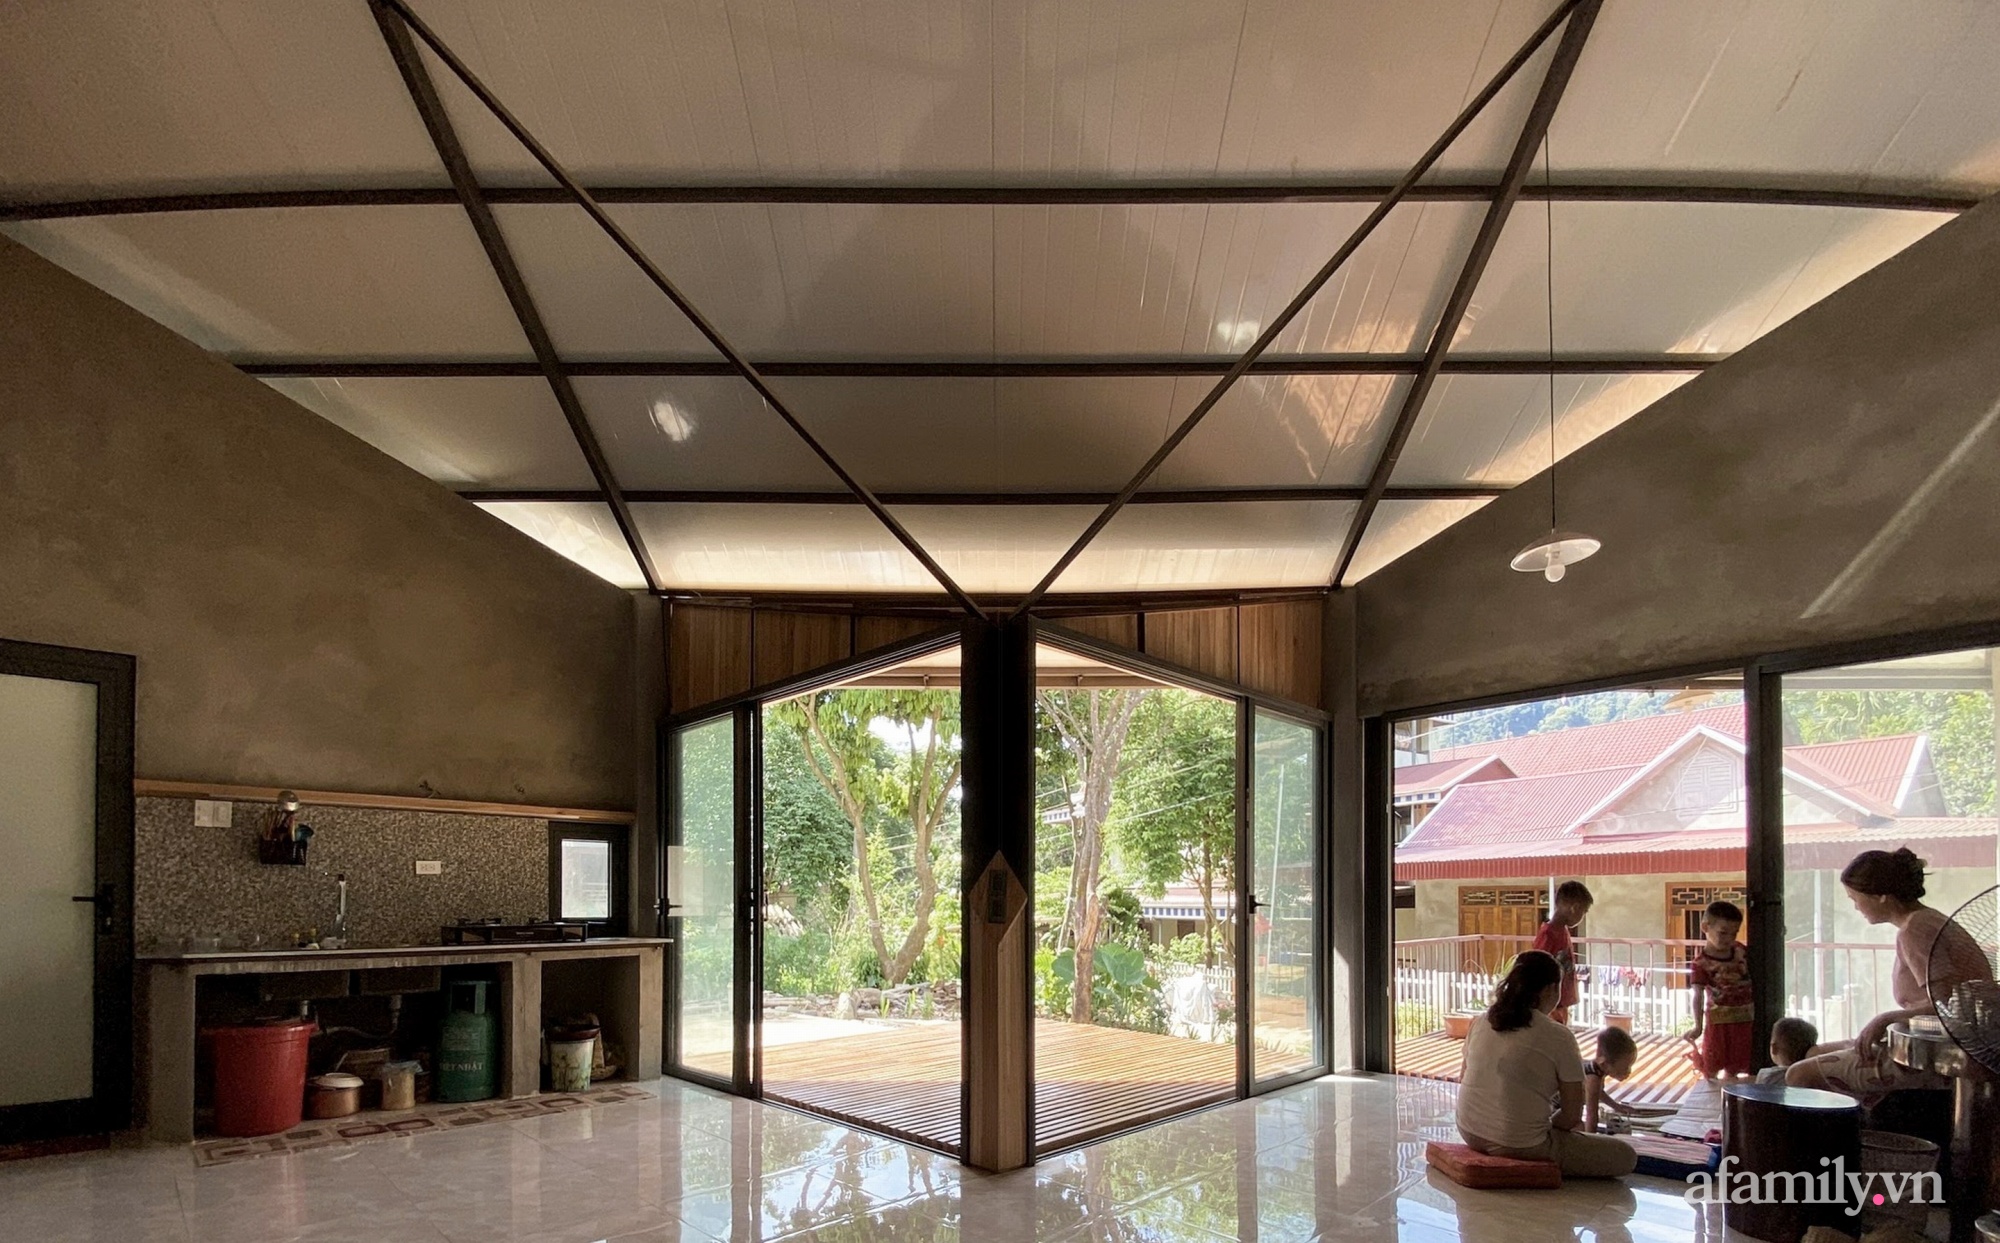 Ngôi nhà mát rượi dưới nắng gắt mùa hè nhờ thiết kế mái hai tầng và ống khói 3 mét ở Thanh Hóa - Ảnh 14.